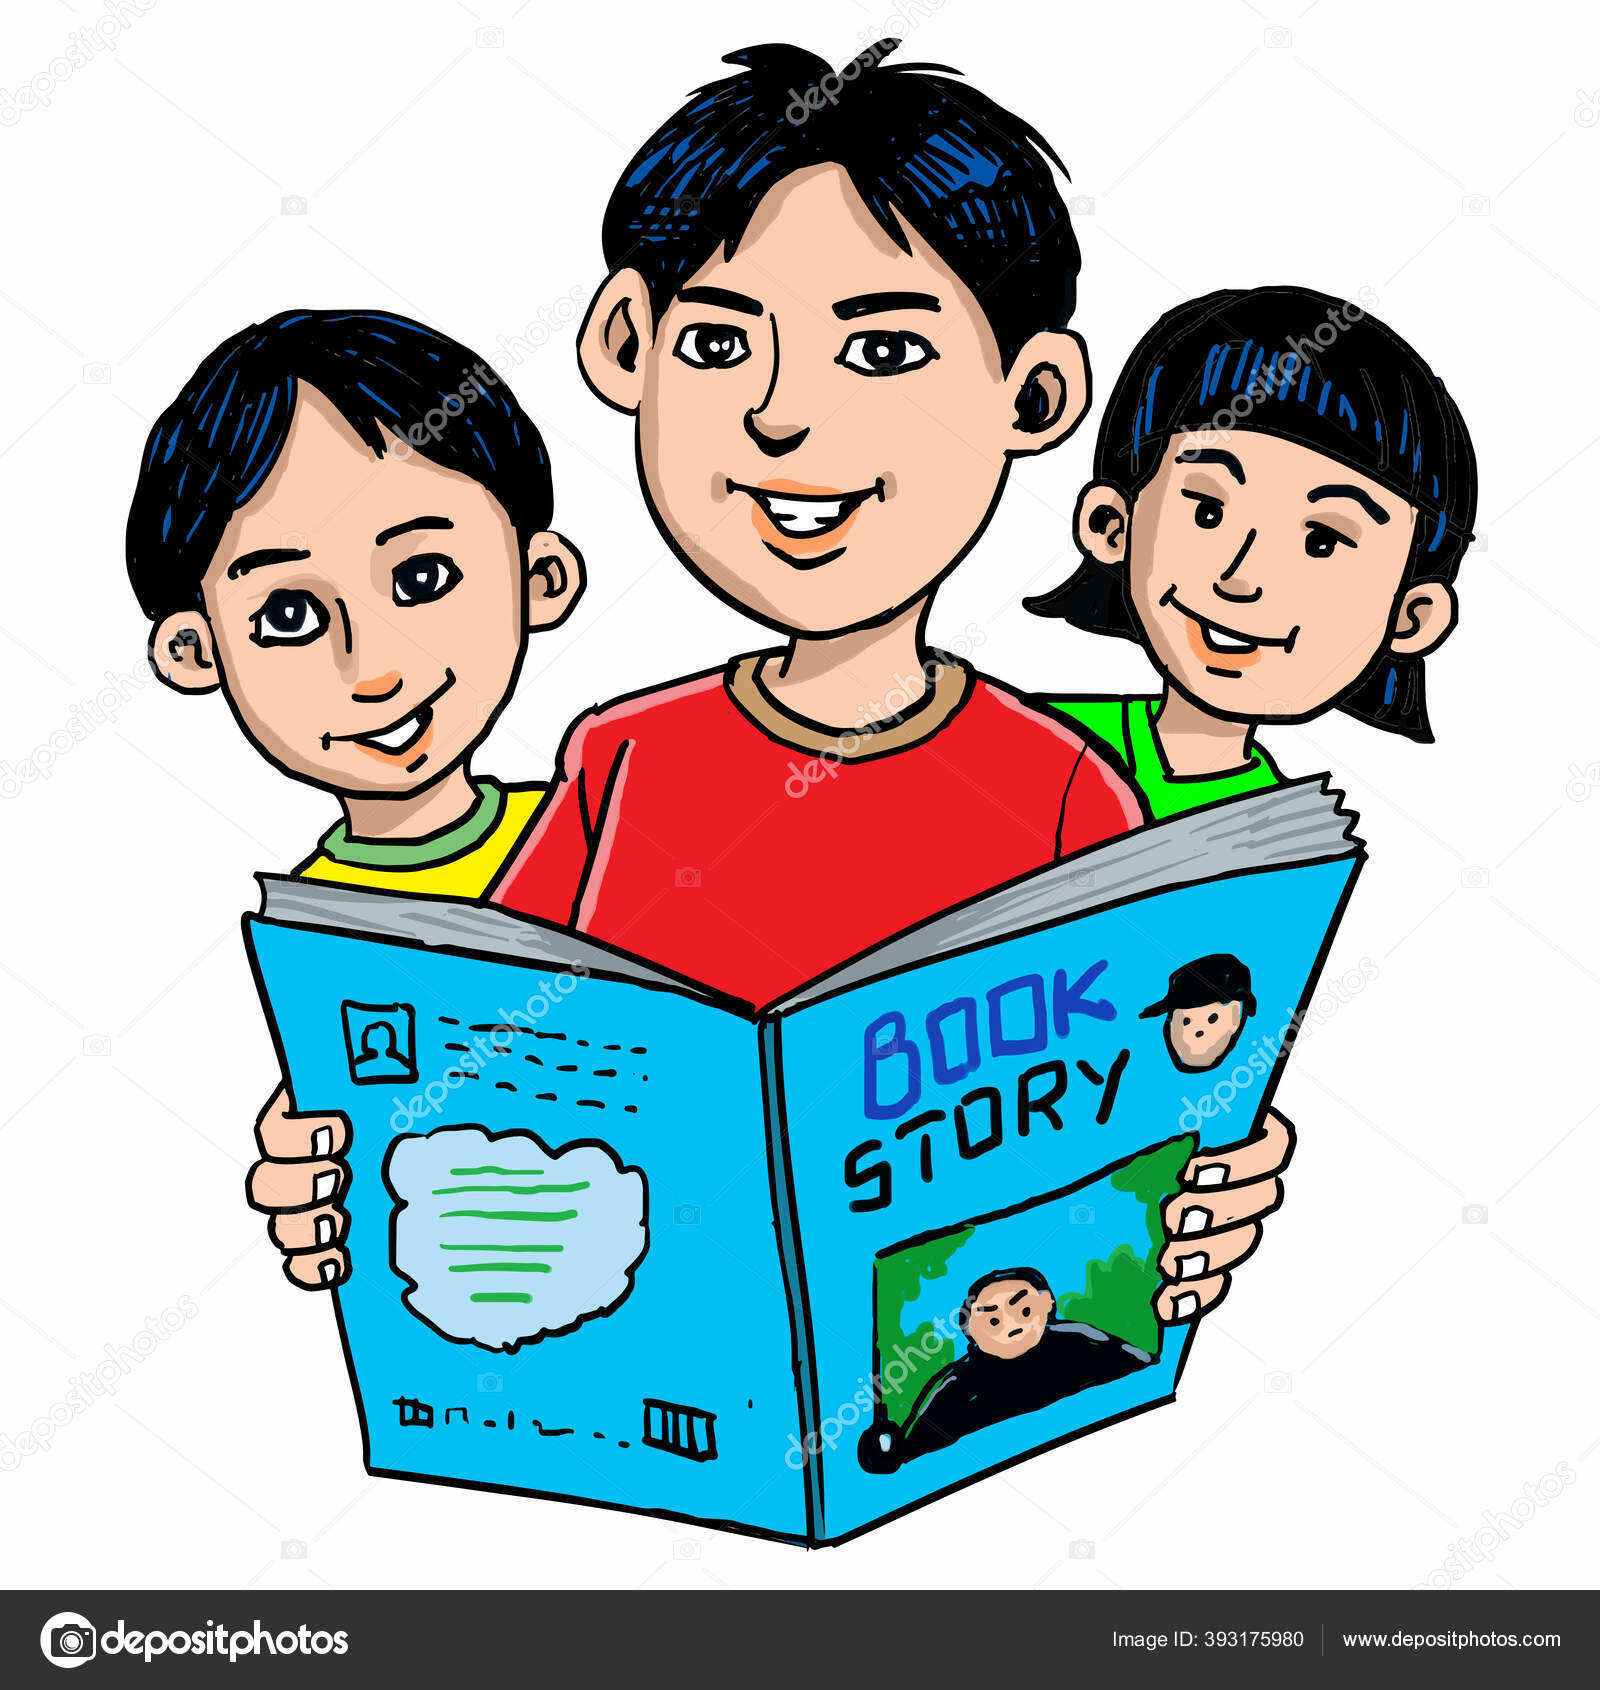 Boys Girl Cartoon Reading Big Book Vector Image By C Azdesign64 Vector Stock